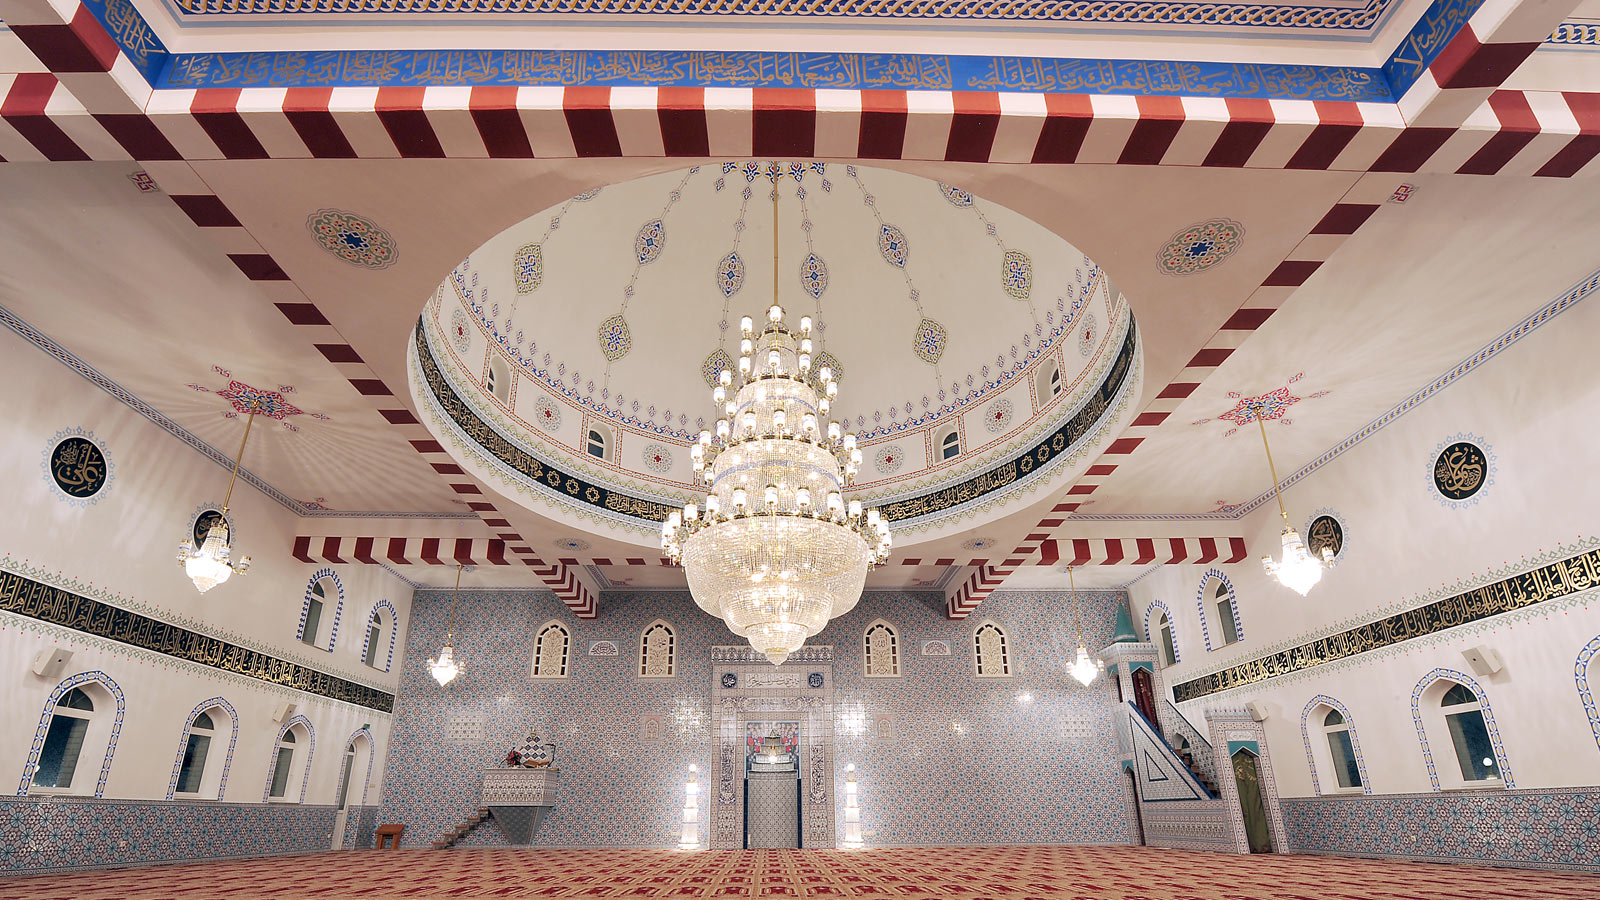 Ditip Hamm Ulu  Mosque Chandelier - Germany